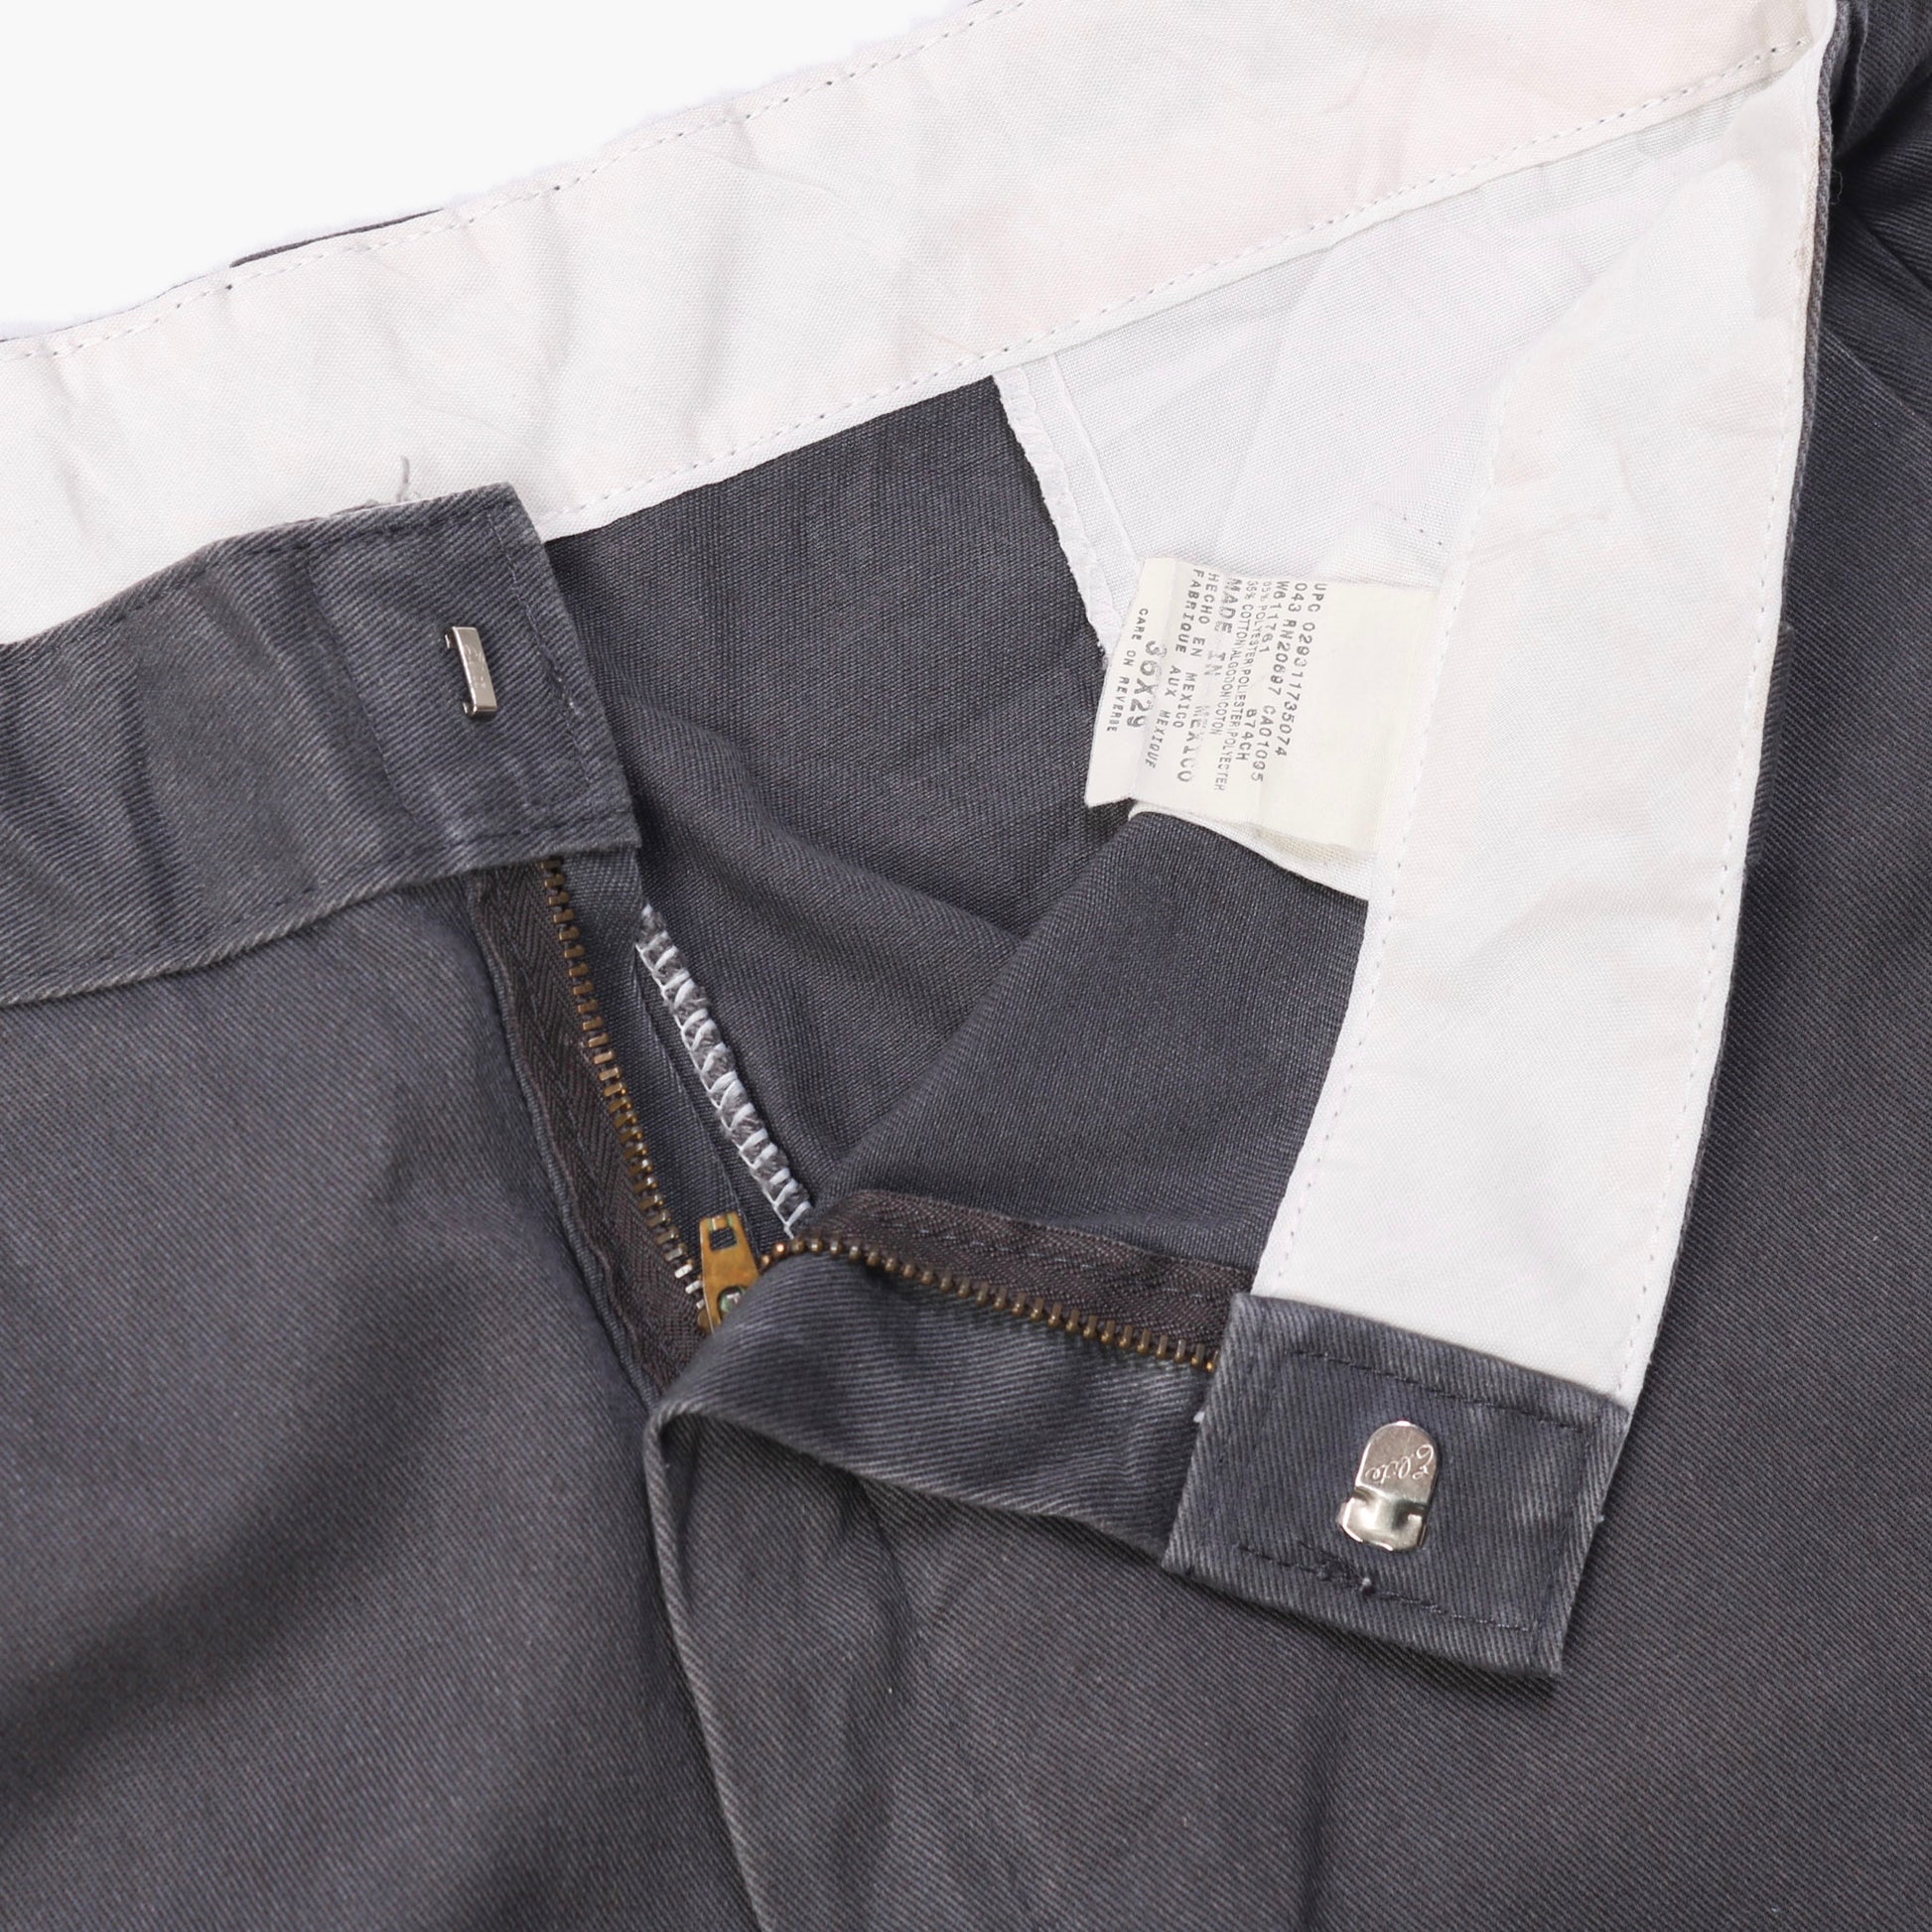 Dickies Original 874 Work Trousers - Grey - 36/29 - American Madness